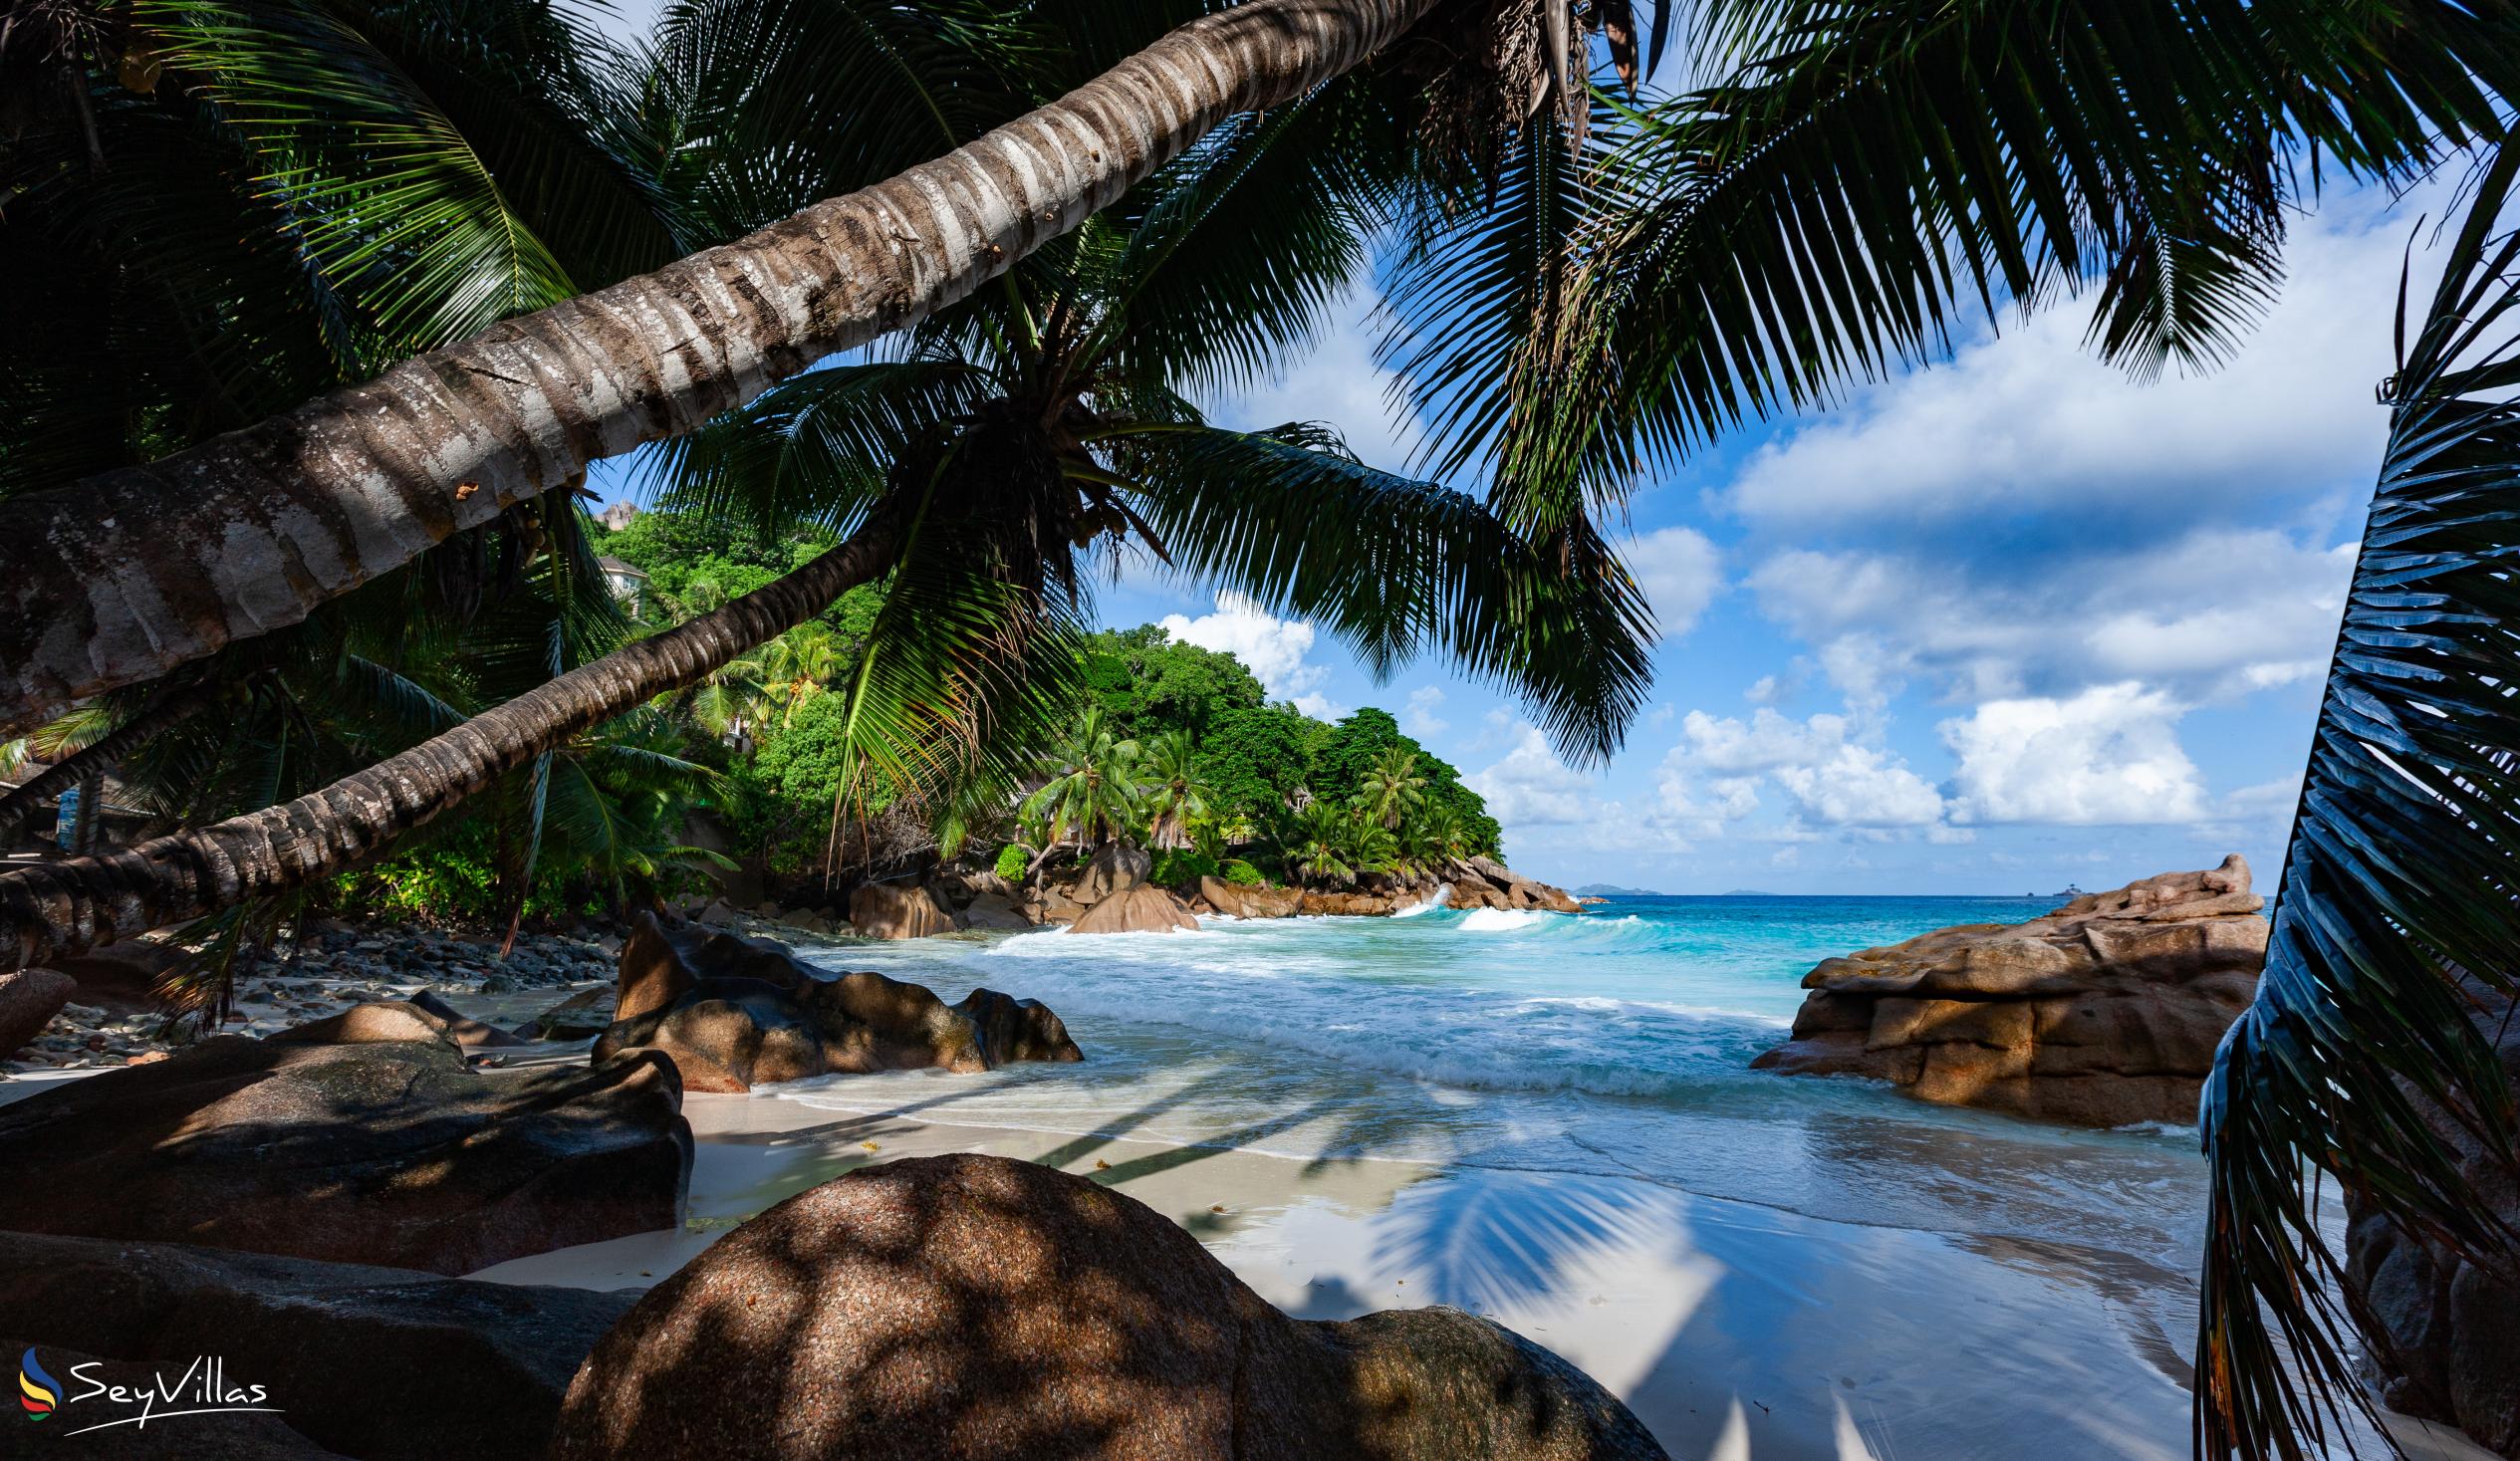 Foto 22: O'Soleil Chalets - Location - La Digue (Seychelles)